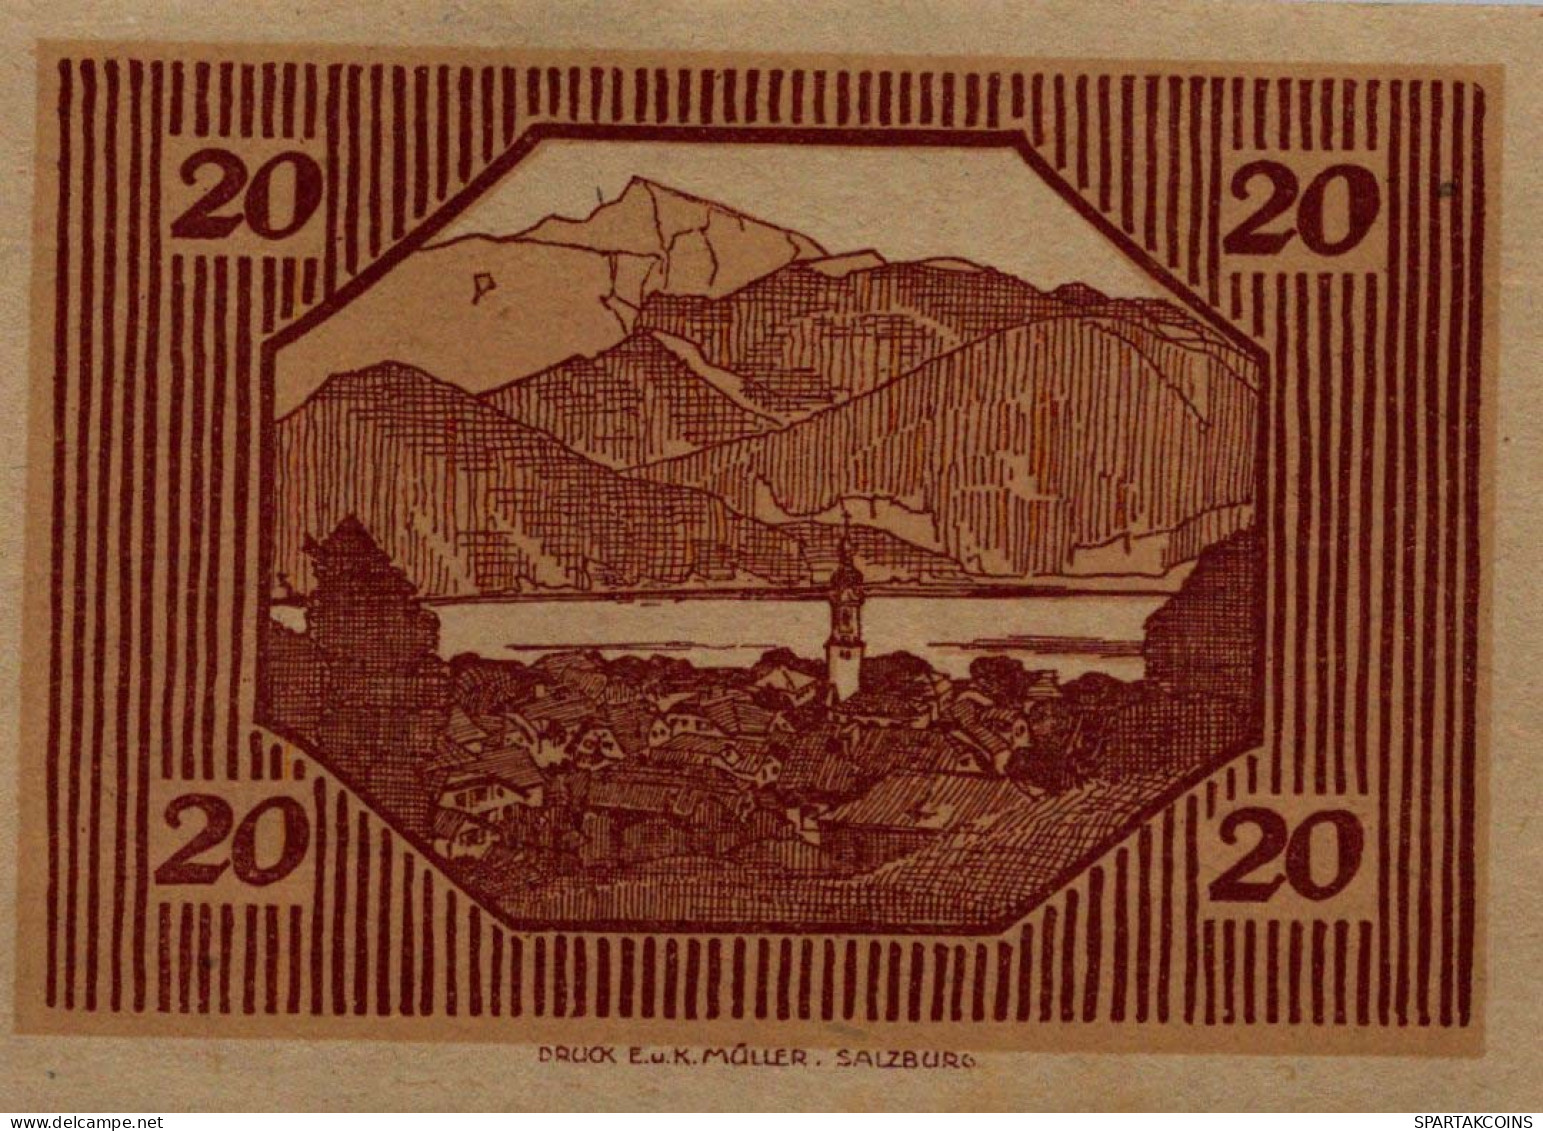 20 HELLER 1920 Stadt SANKT GILGEN Salzburg Österreich Notgeld Papiergeld Banknote #PG791 - [11] Emisiones Locales